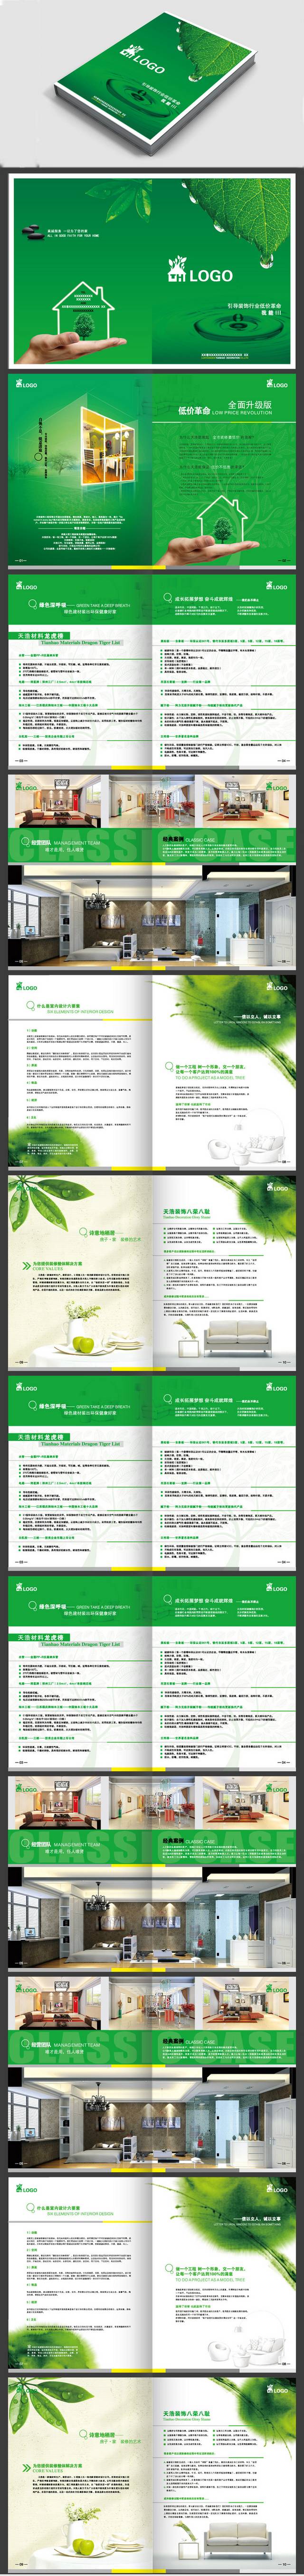 绿色精品装饰公司设计画册